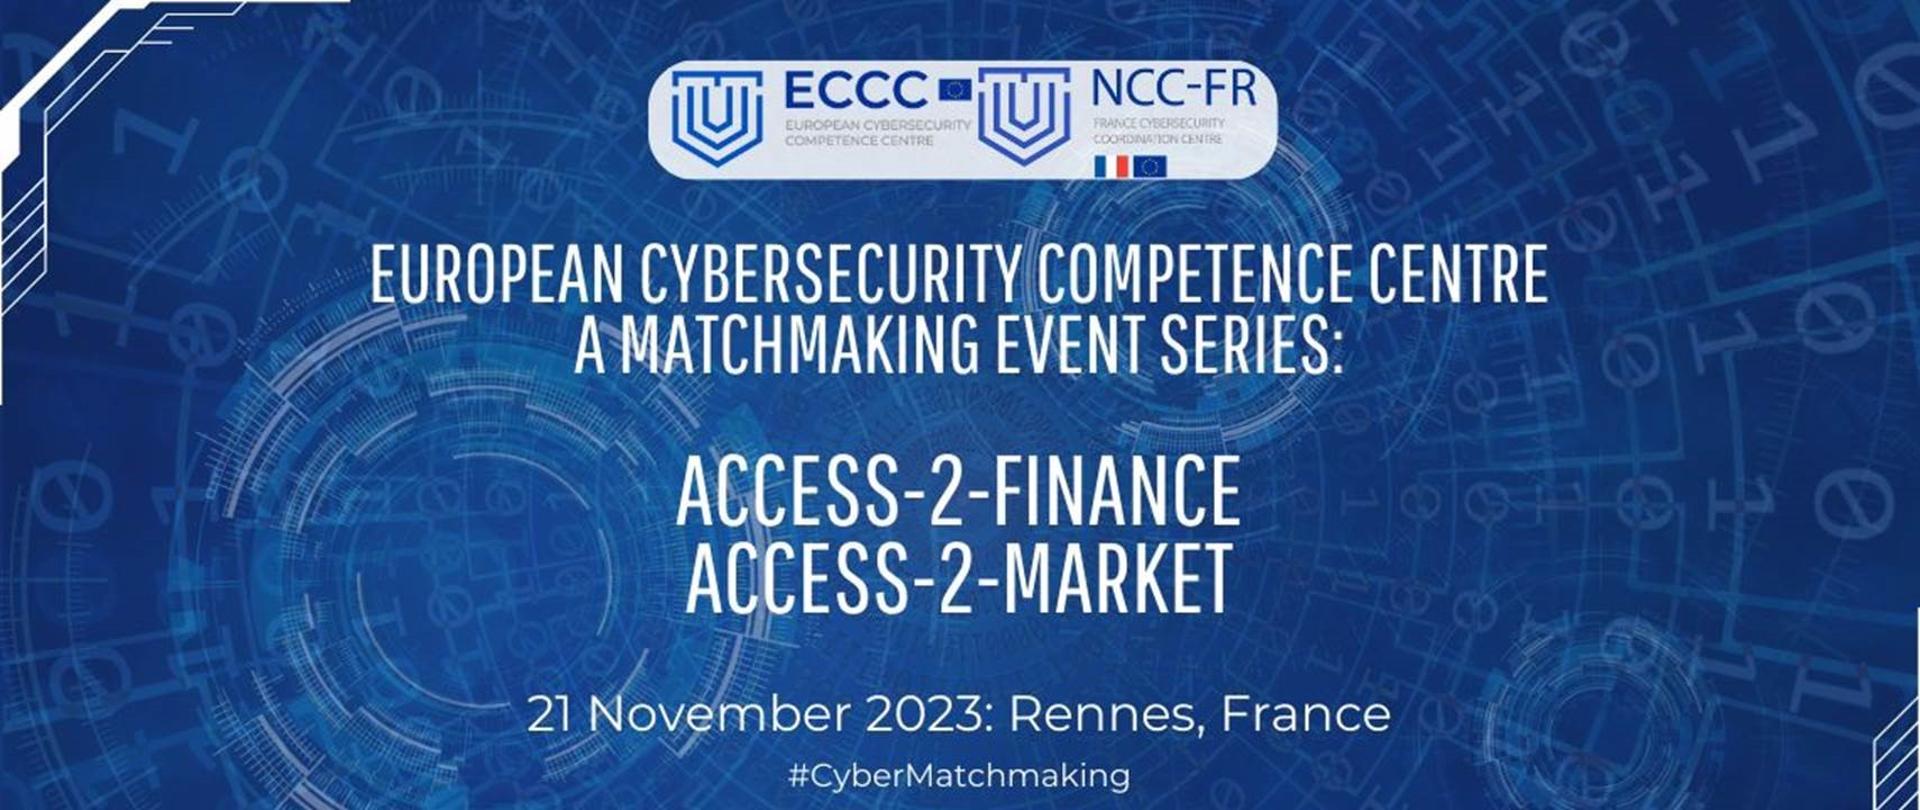 Baner informacyjny wydarzenia matchmakingowego Access-2-Finance Access-2-Market we Francji